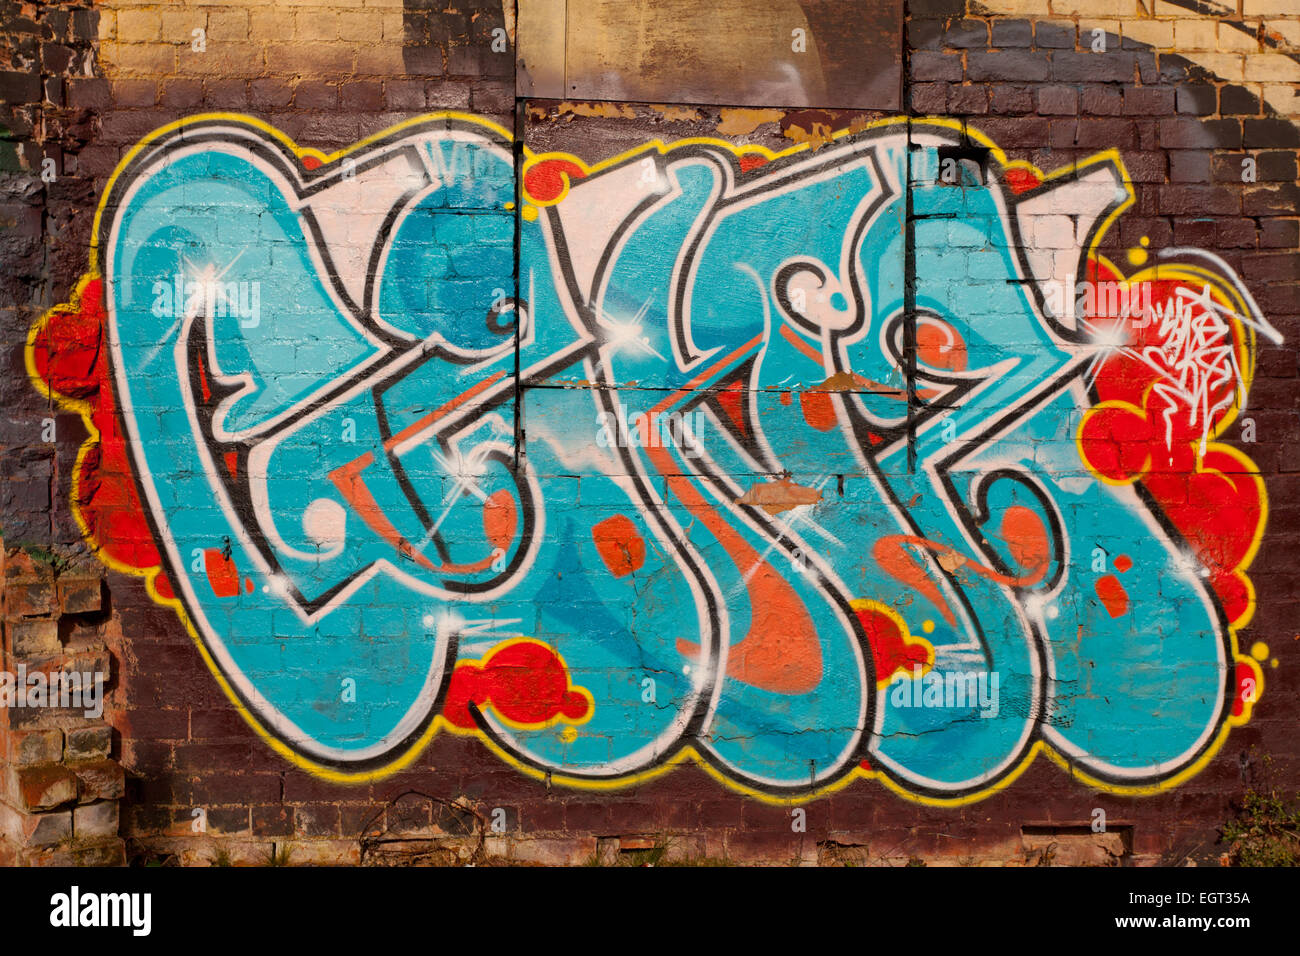 Graffiti sui muri e cartelloni, particolarmente elevate e grafica di qualità tecnica, Digbeth, Birmingham, Regno Unito Foto Stock